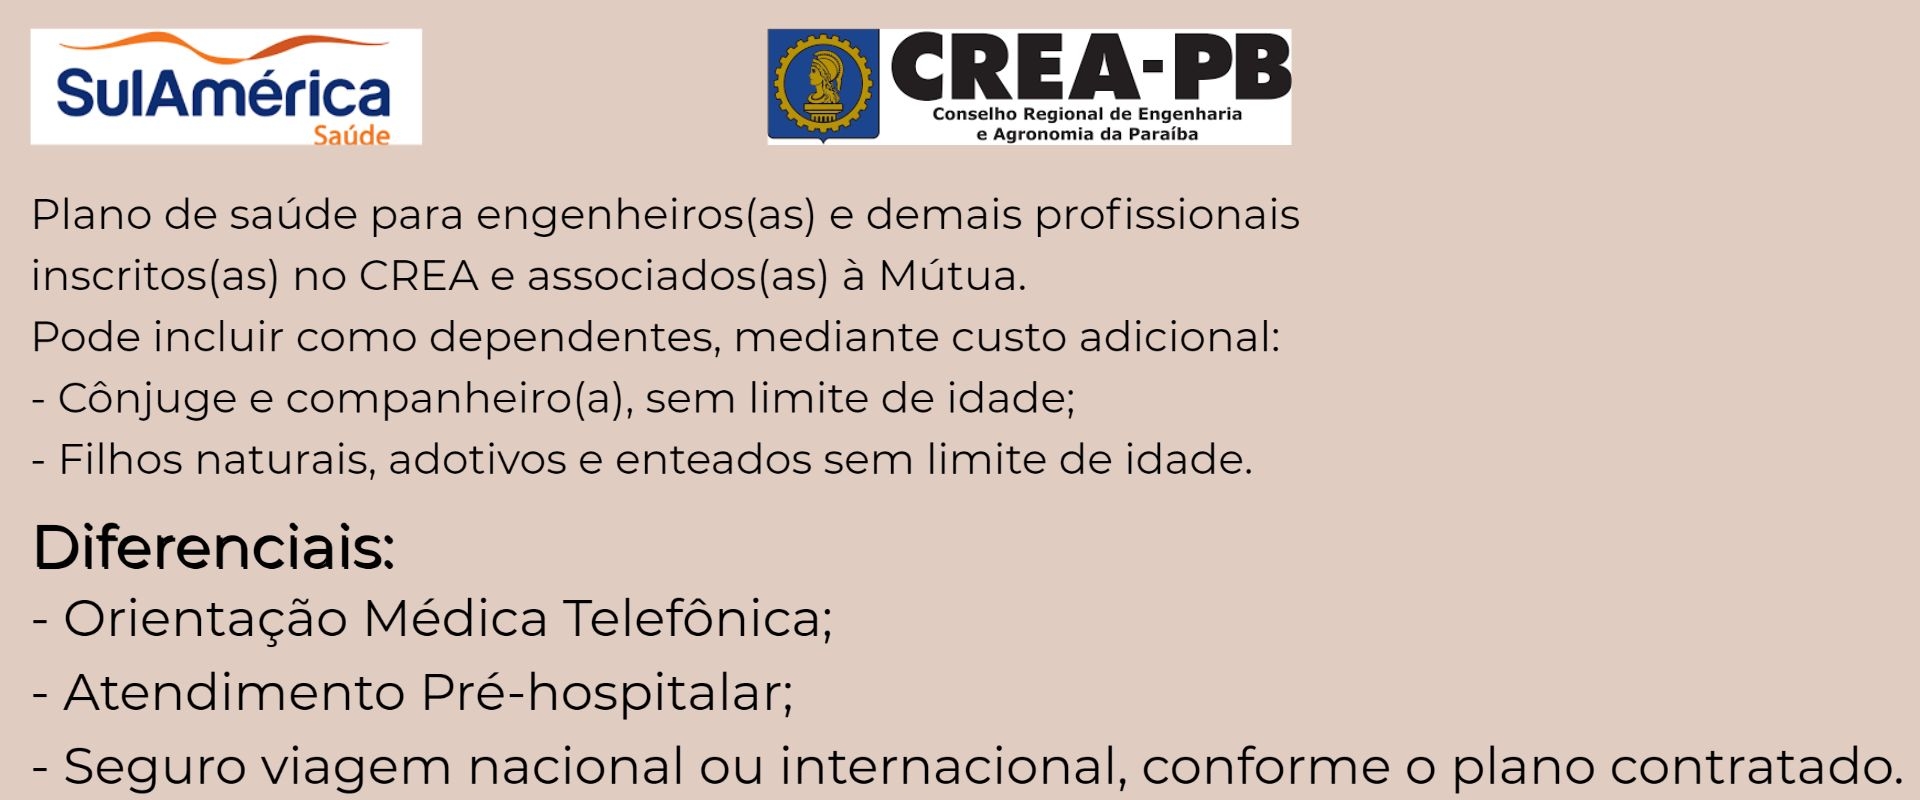 Sul América CREA-PB